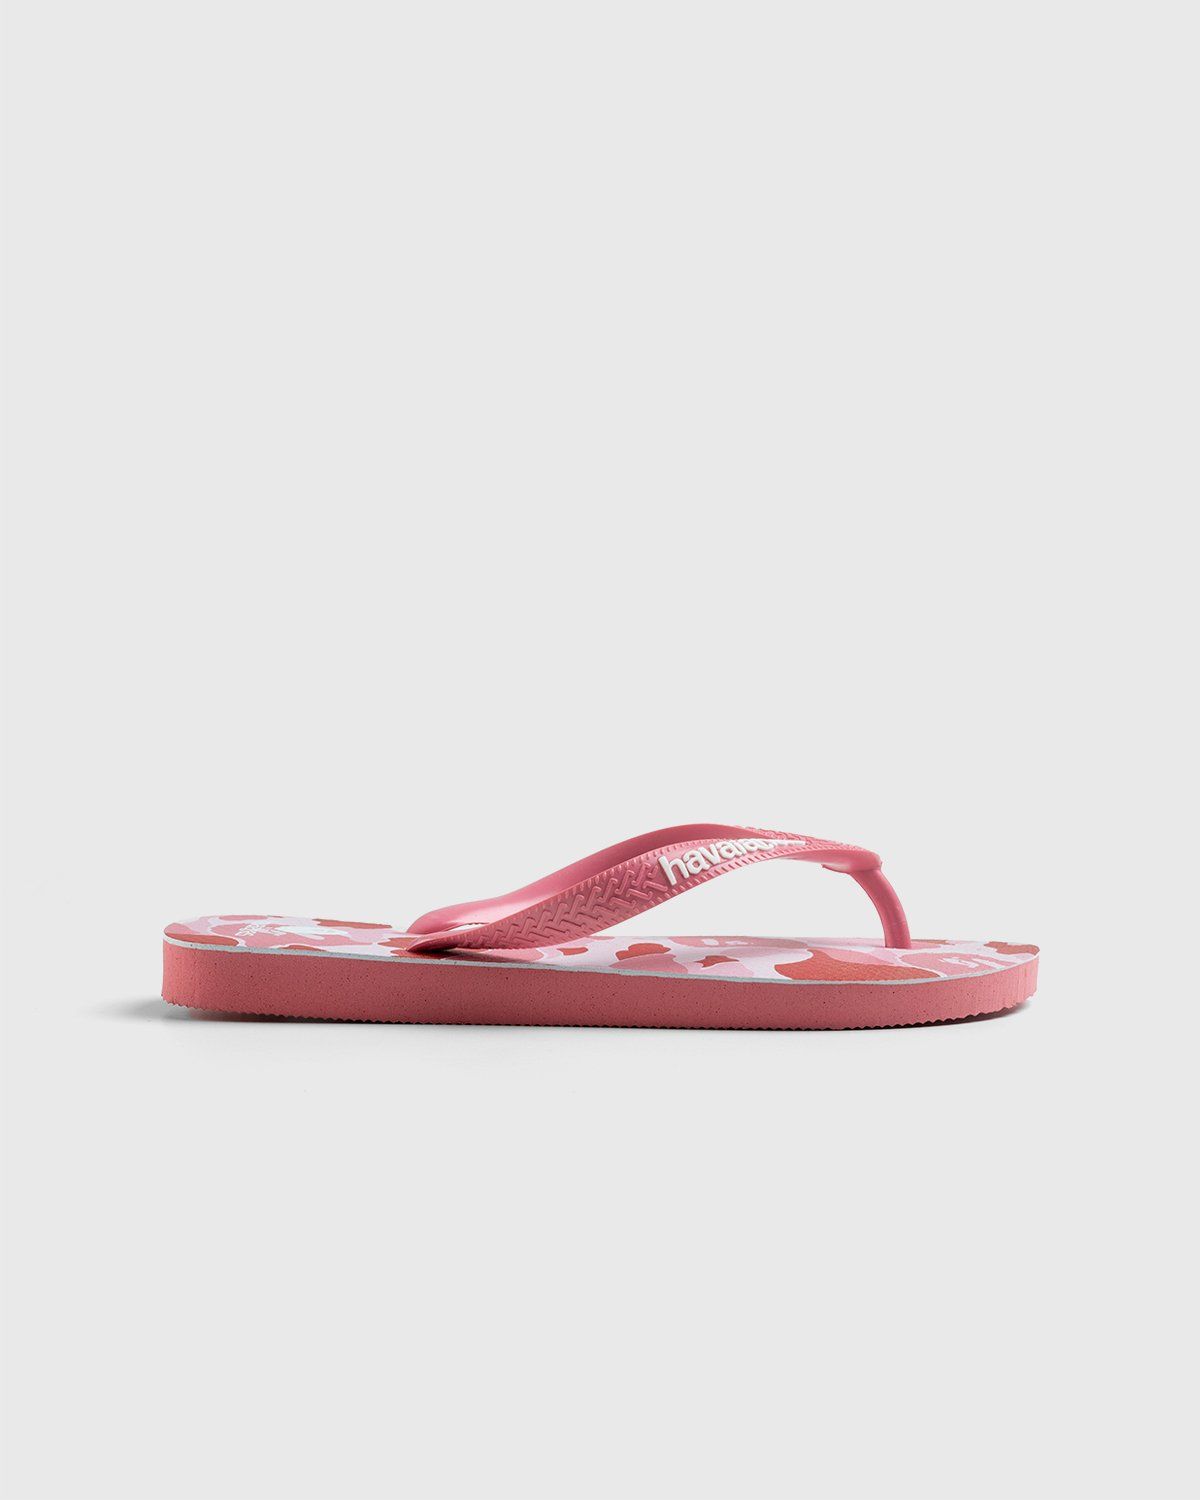 BAPE – Top Pink - Slides - Pink - Image 1